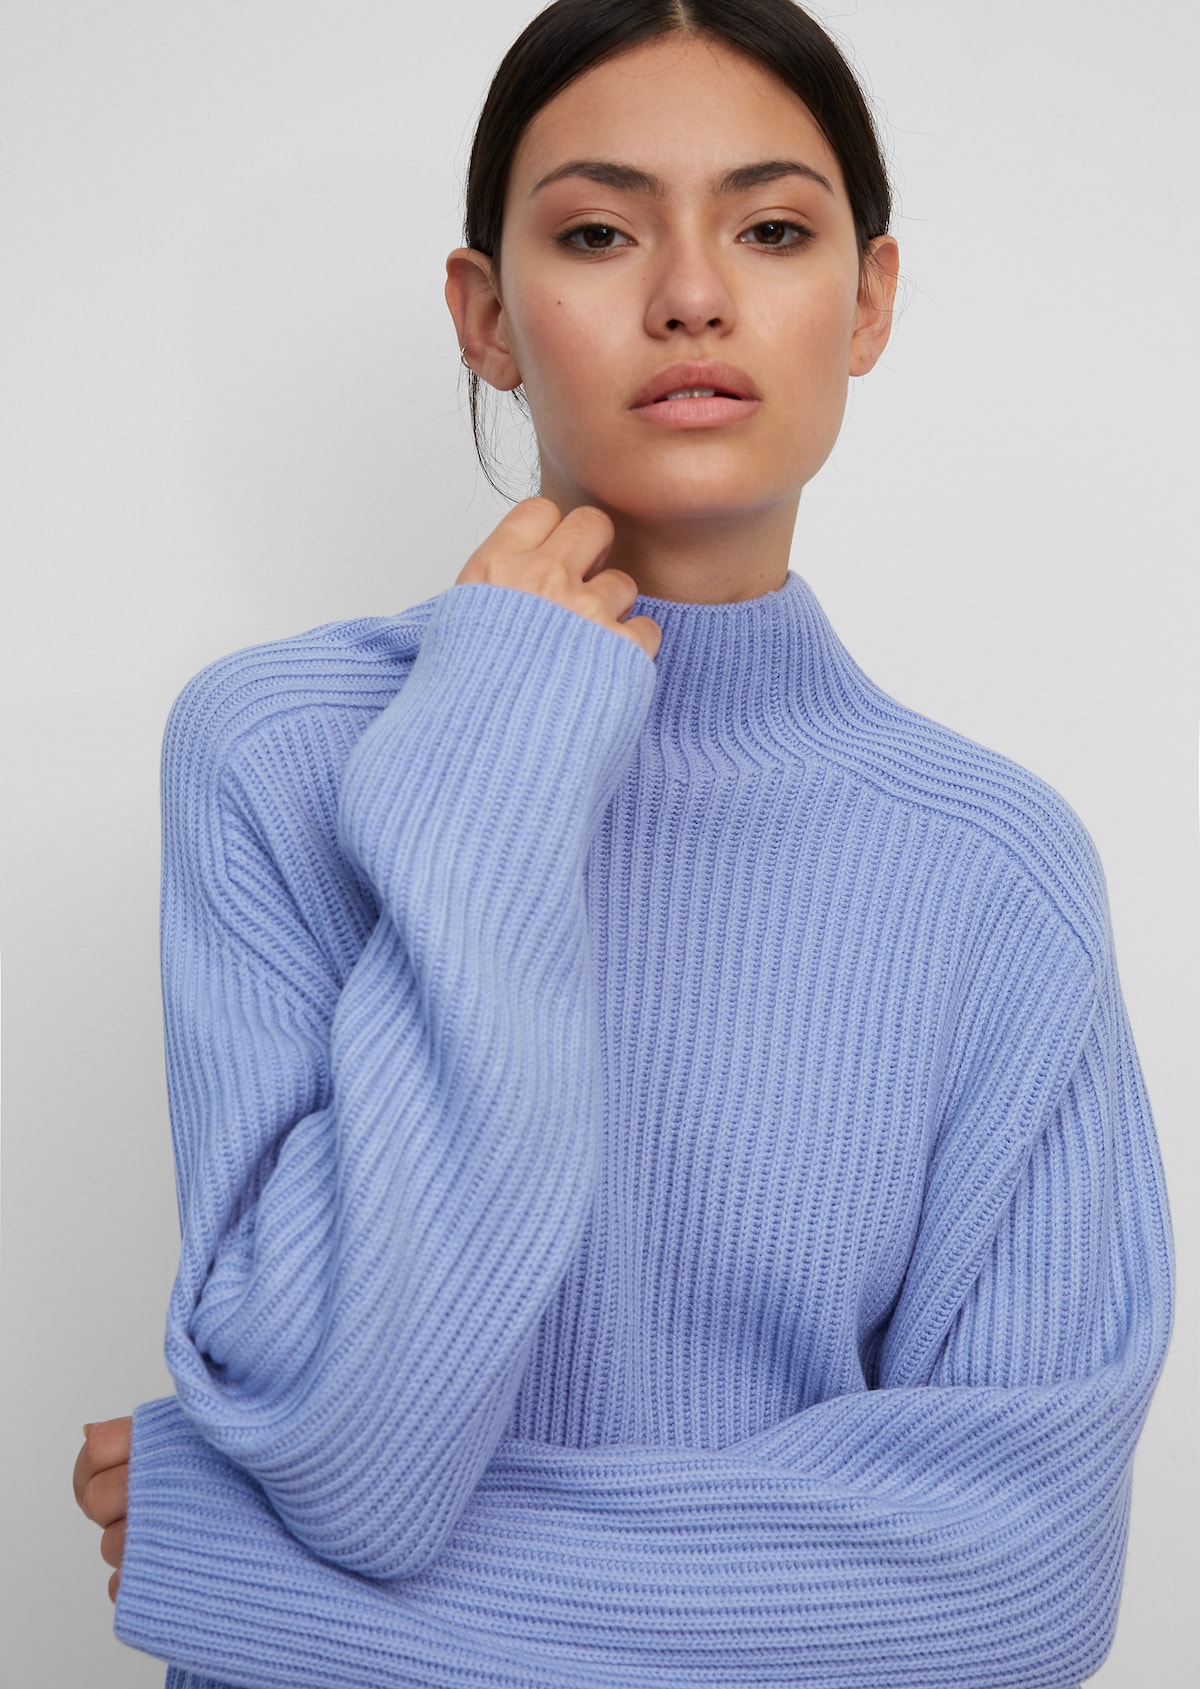 Gør det godt strejke blyant Turtleneck knitted jumper made of soft blended wool - blue | Crew neck  sweater | MARC O'POLO